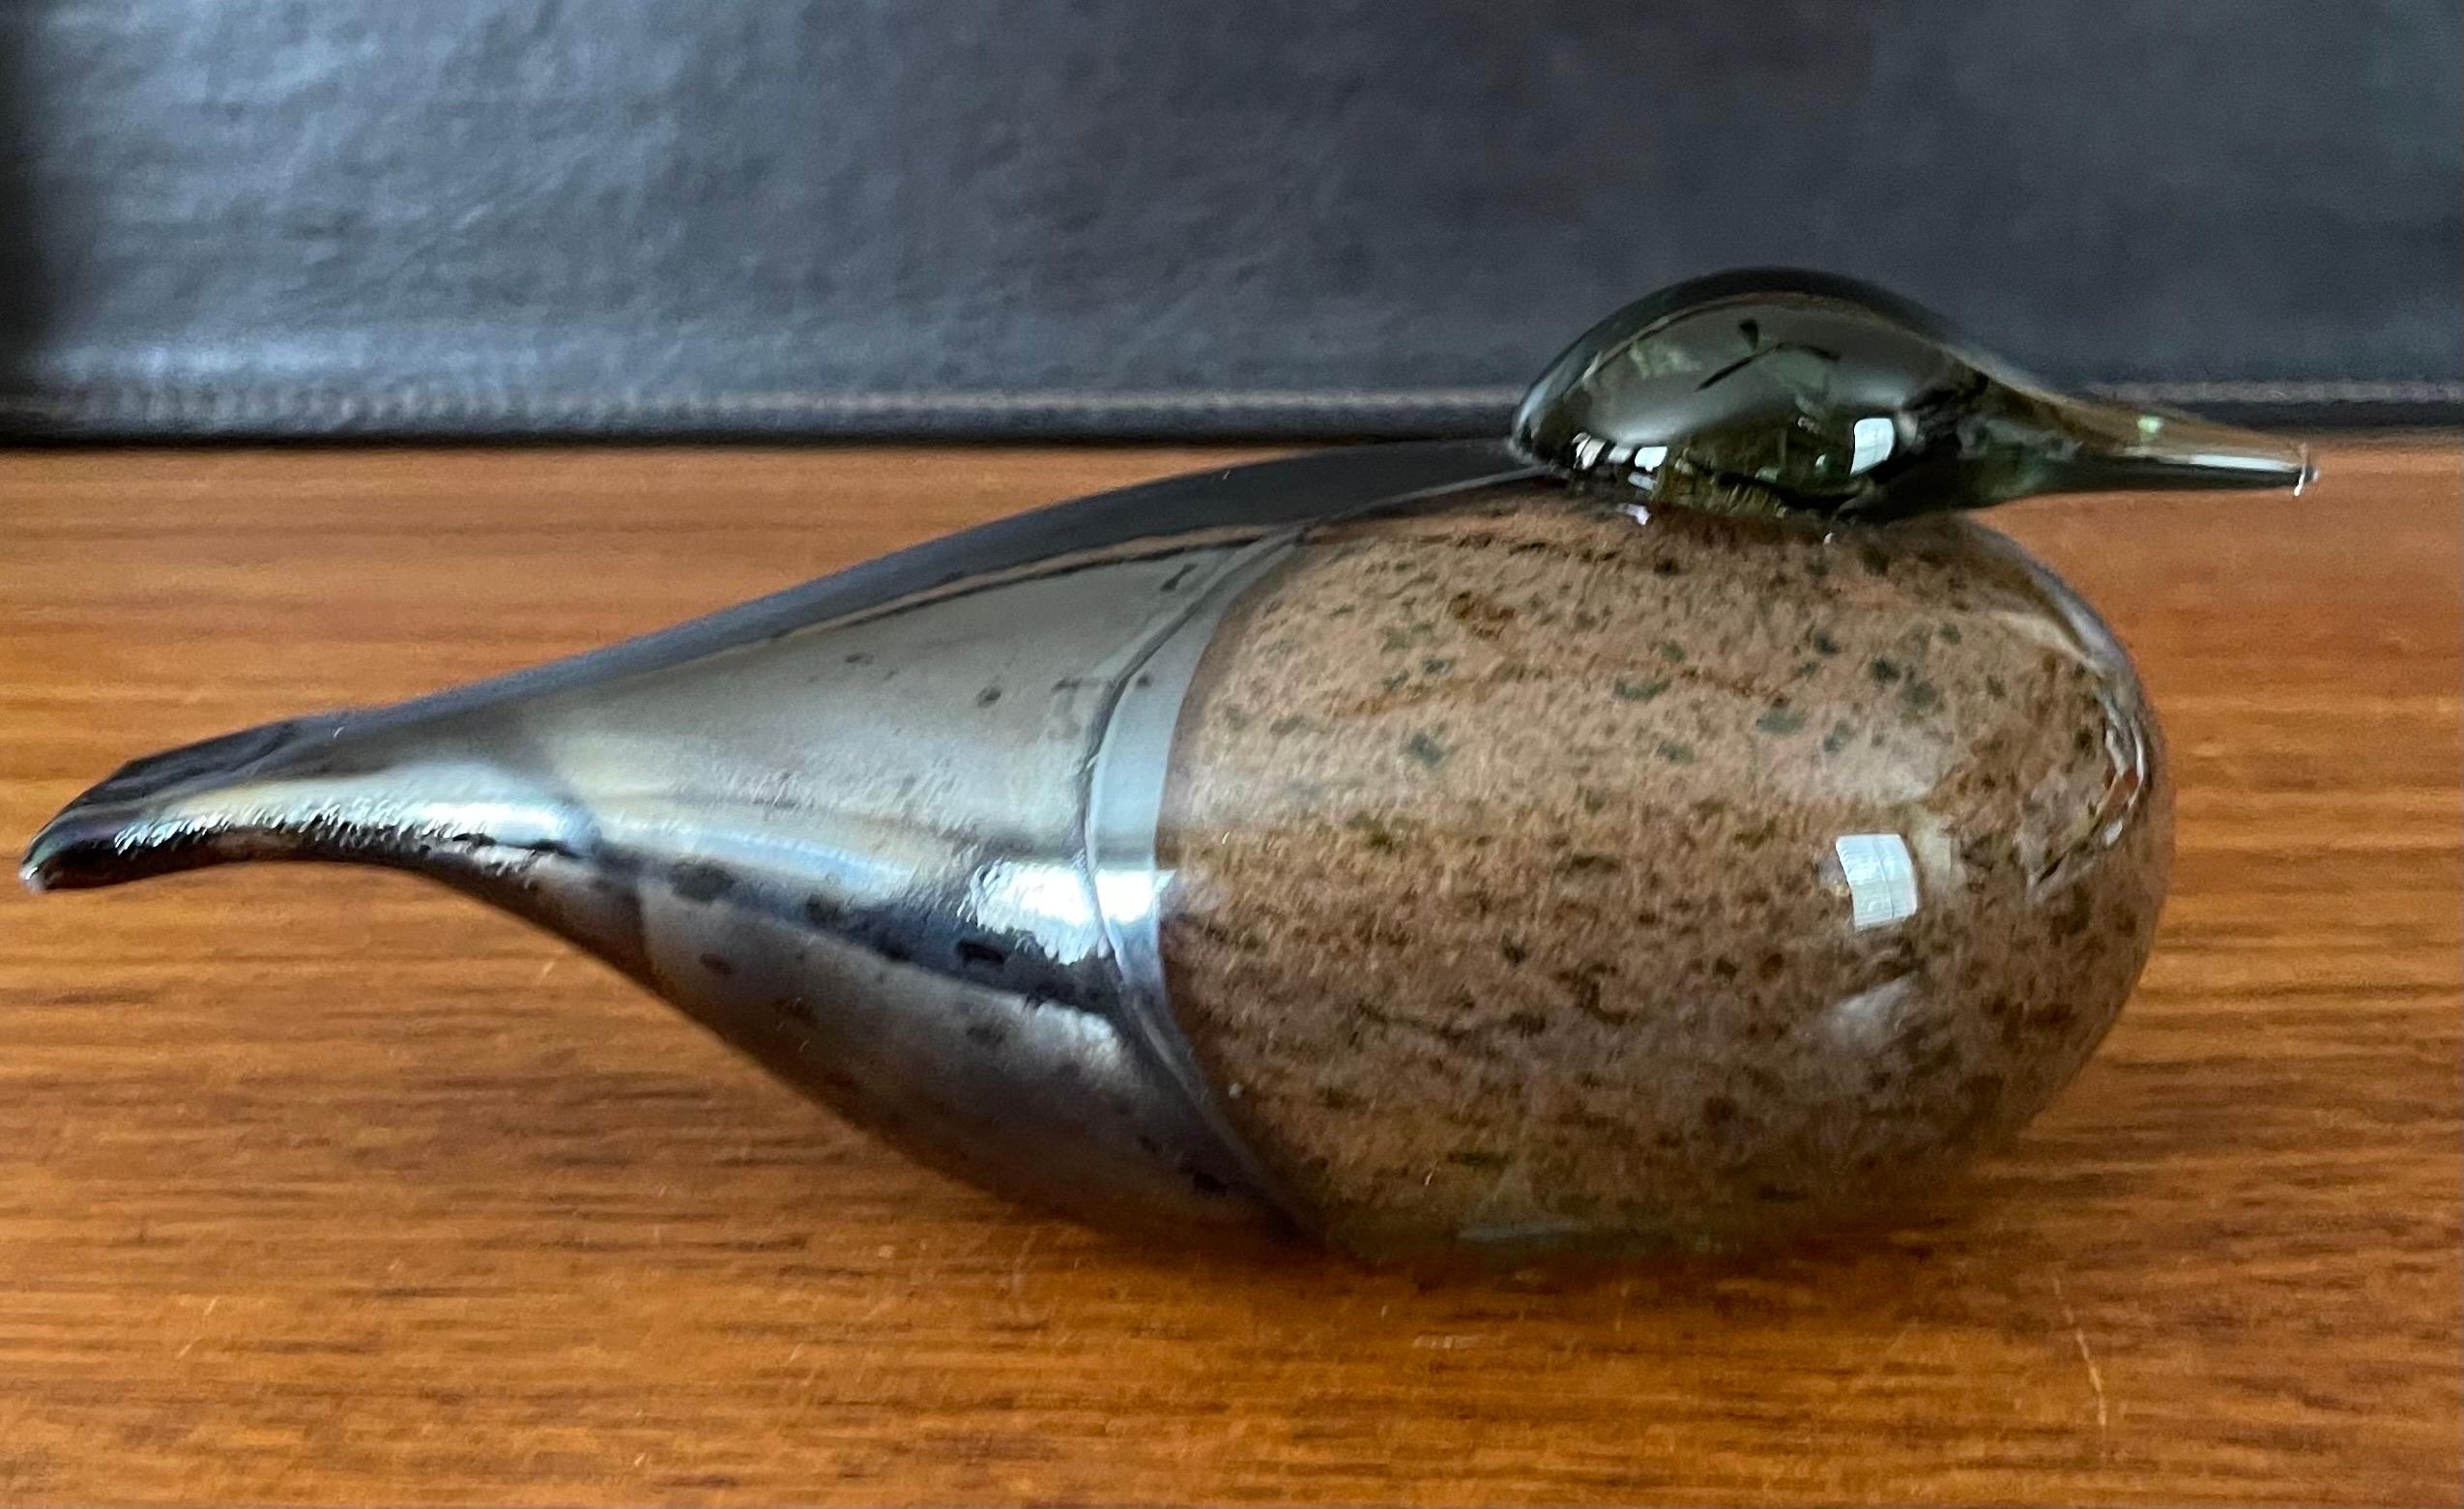 20th Century Art Glass Eider Sea Duck / Bird Sculpture by Oiva Toikka / Nuutajarvi of Finland For Sale